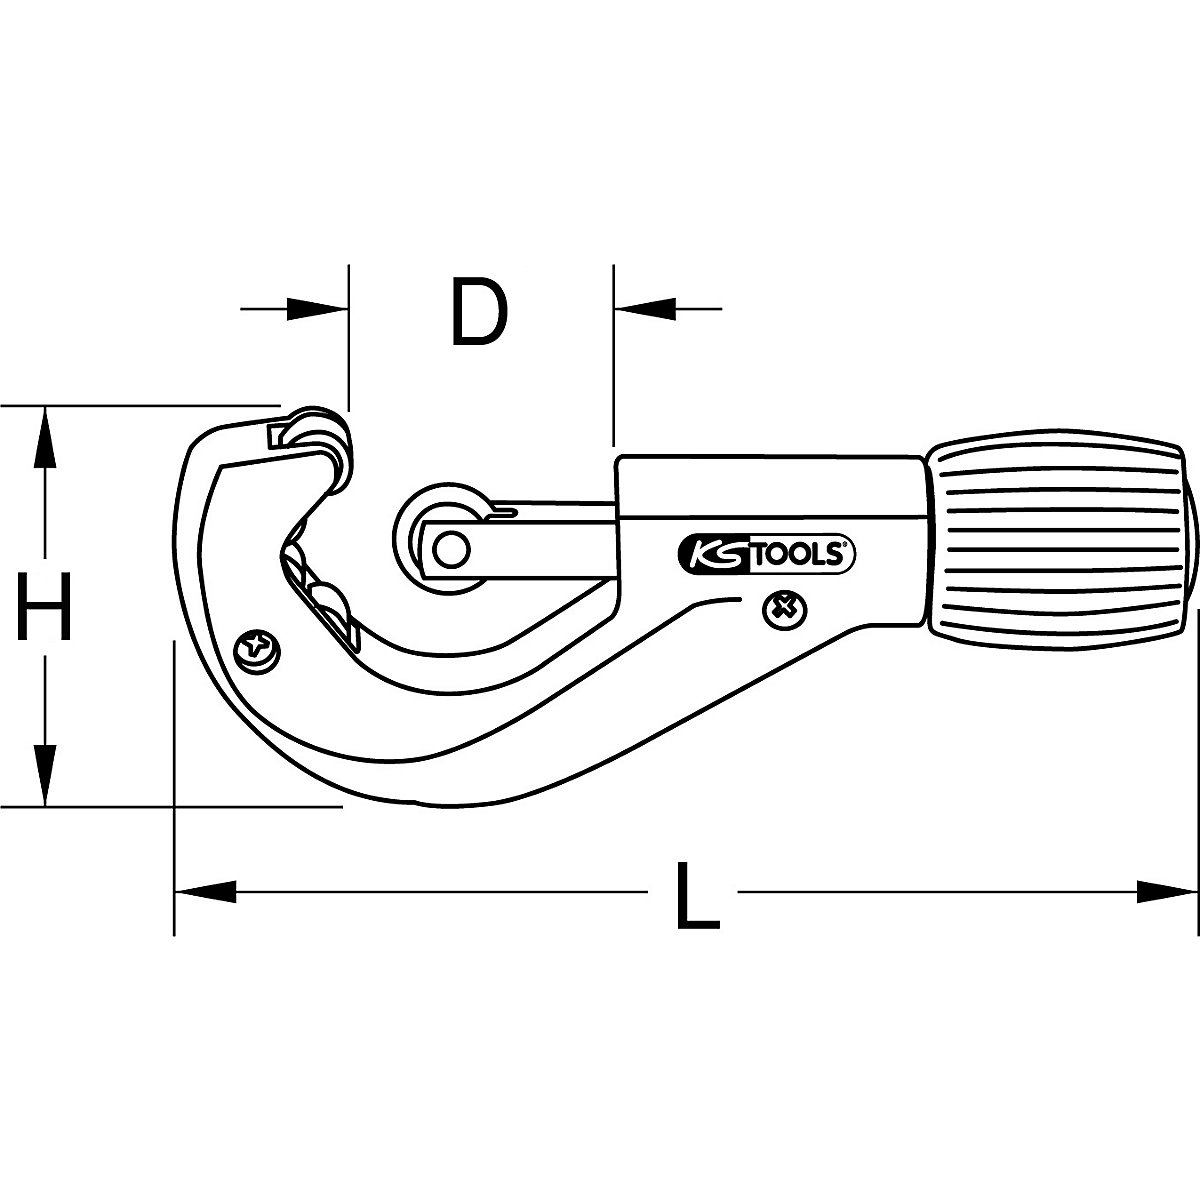 Teleskopowy obcinak do rur – KS Tools (Zdjęcie produktu 2)-1